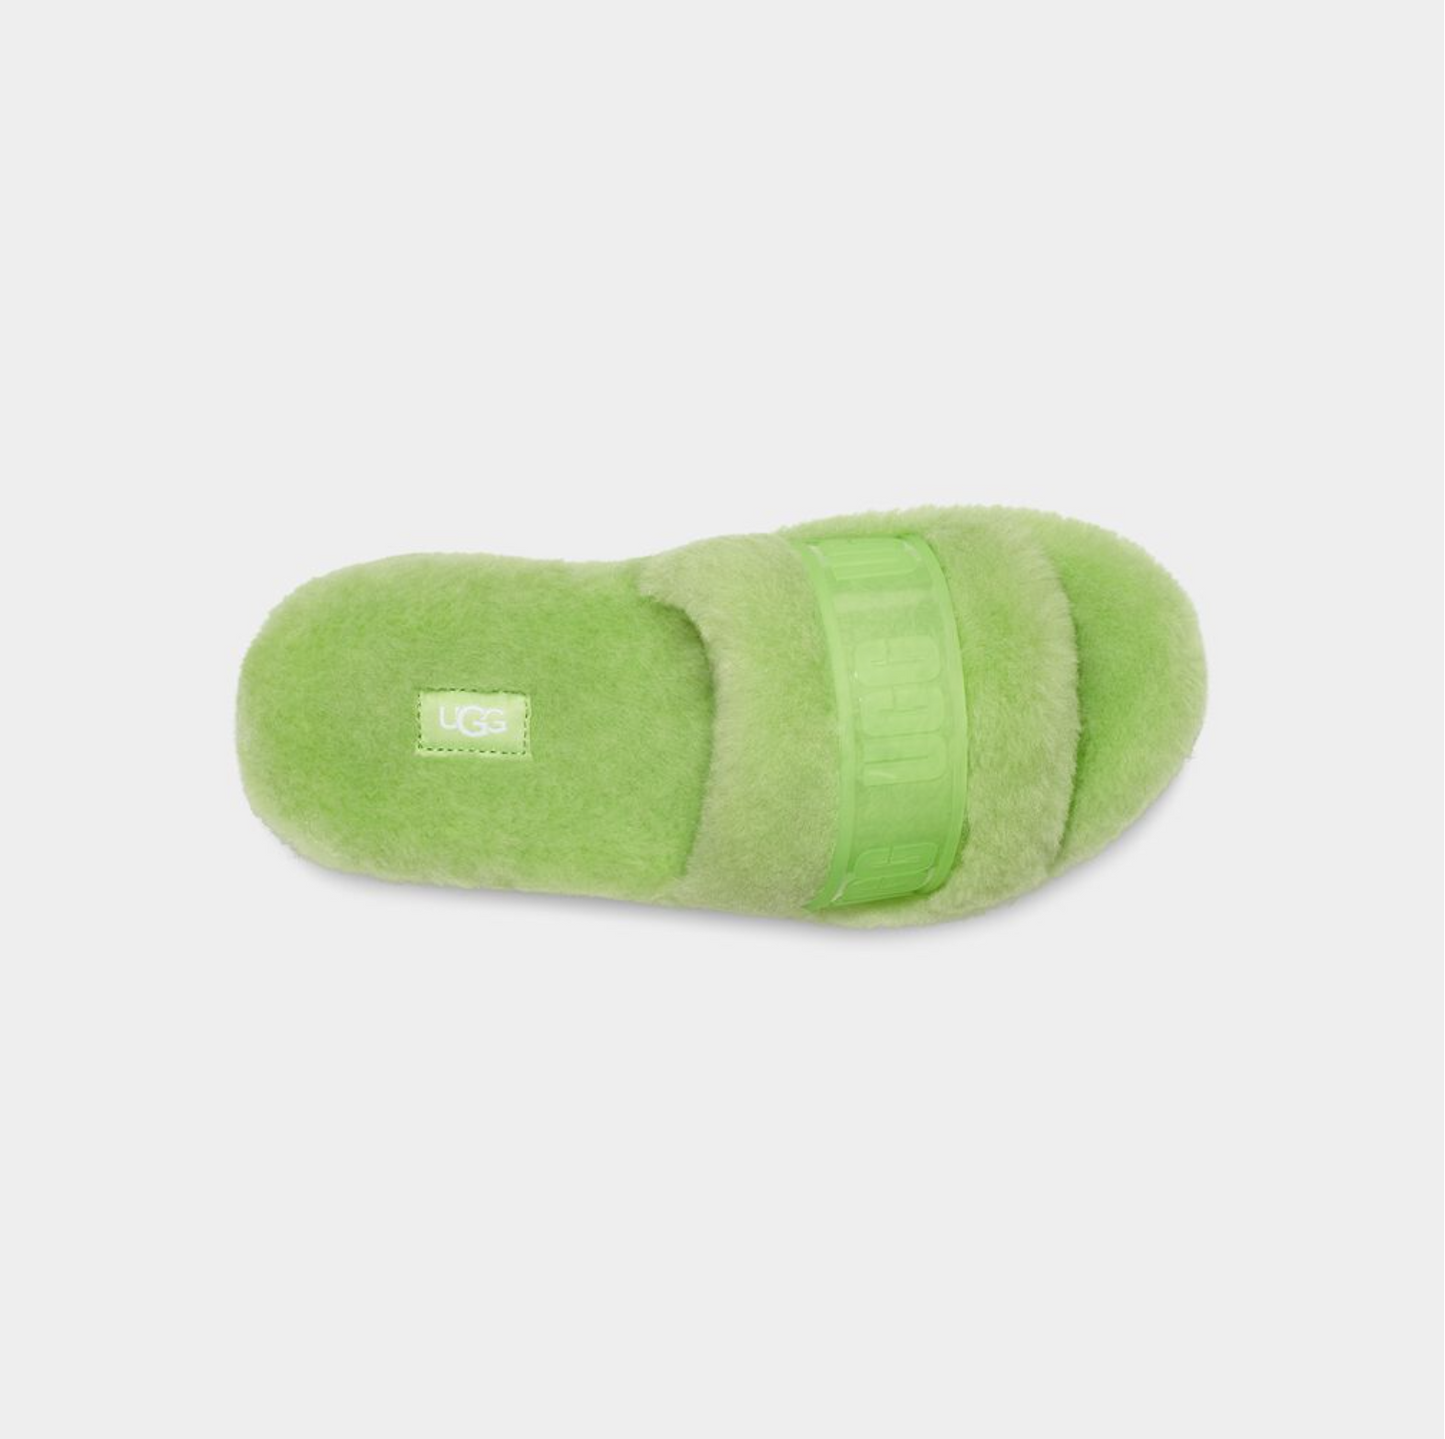 UGG Fluffita Green & Clear - Size 10